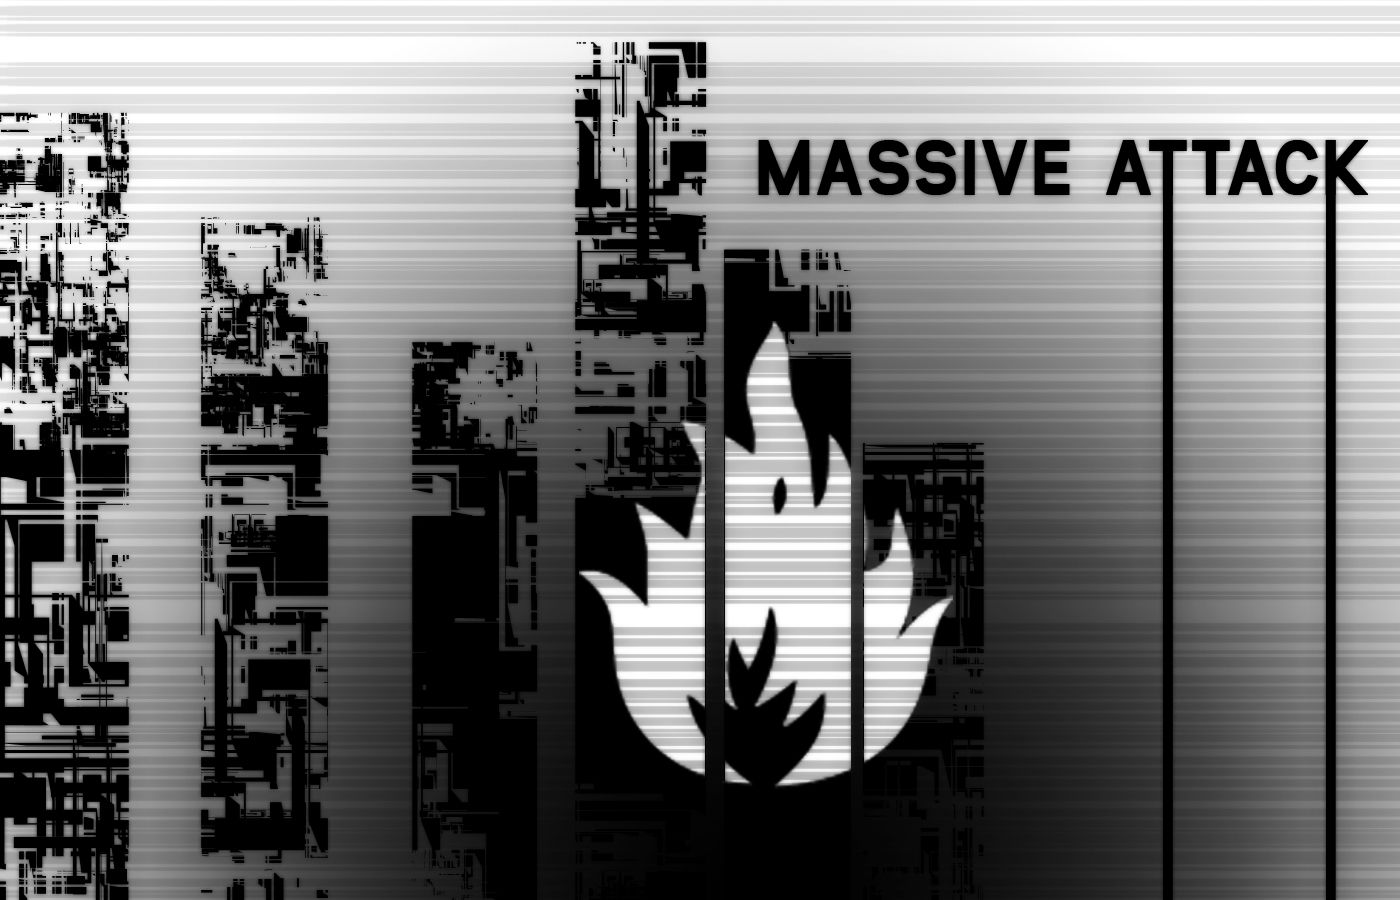 Massive Attack Wallpaper. Attack On Titan Wallpaper Anime, Shark Attack Wallpaper and Attack On Titan Wallpaper